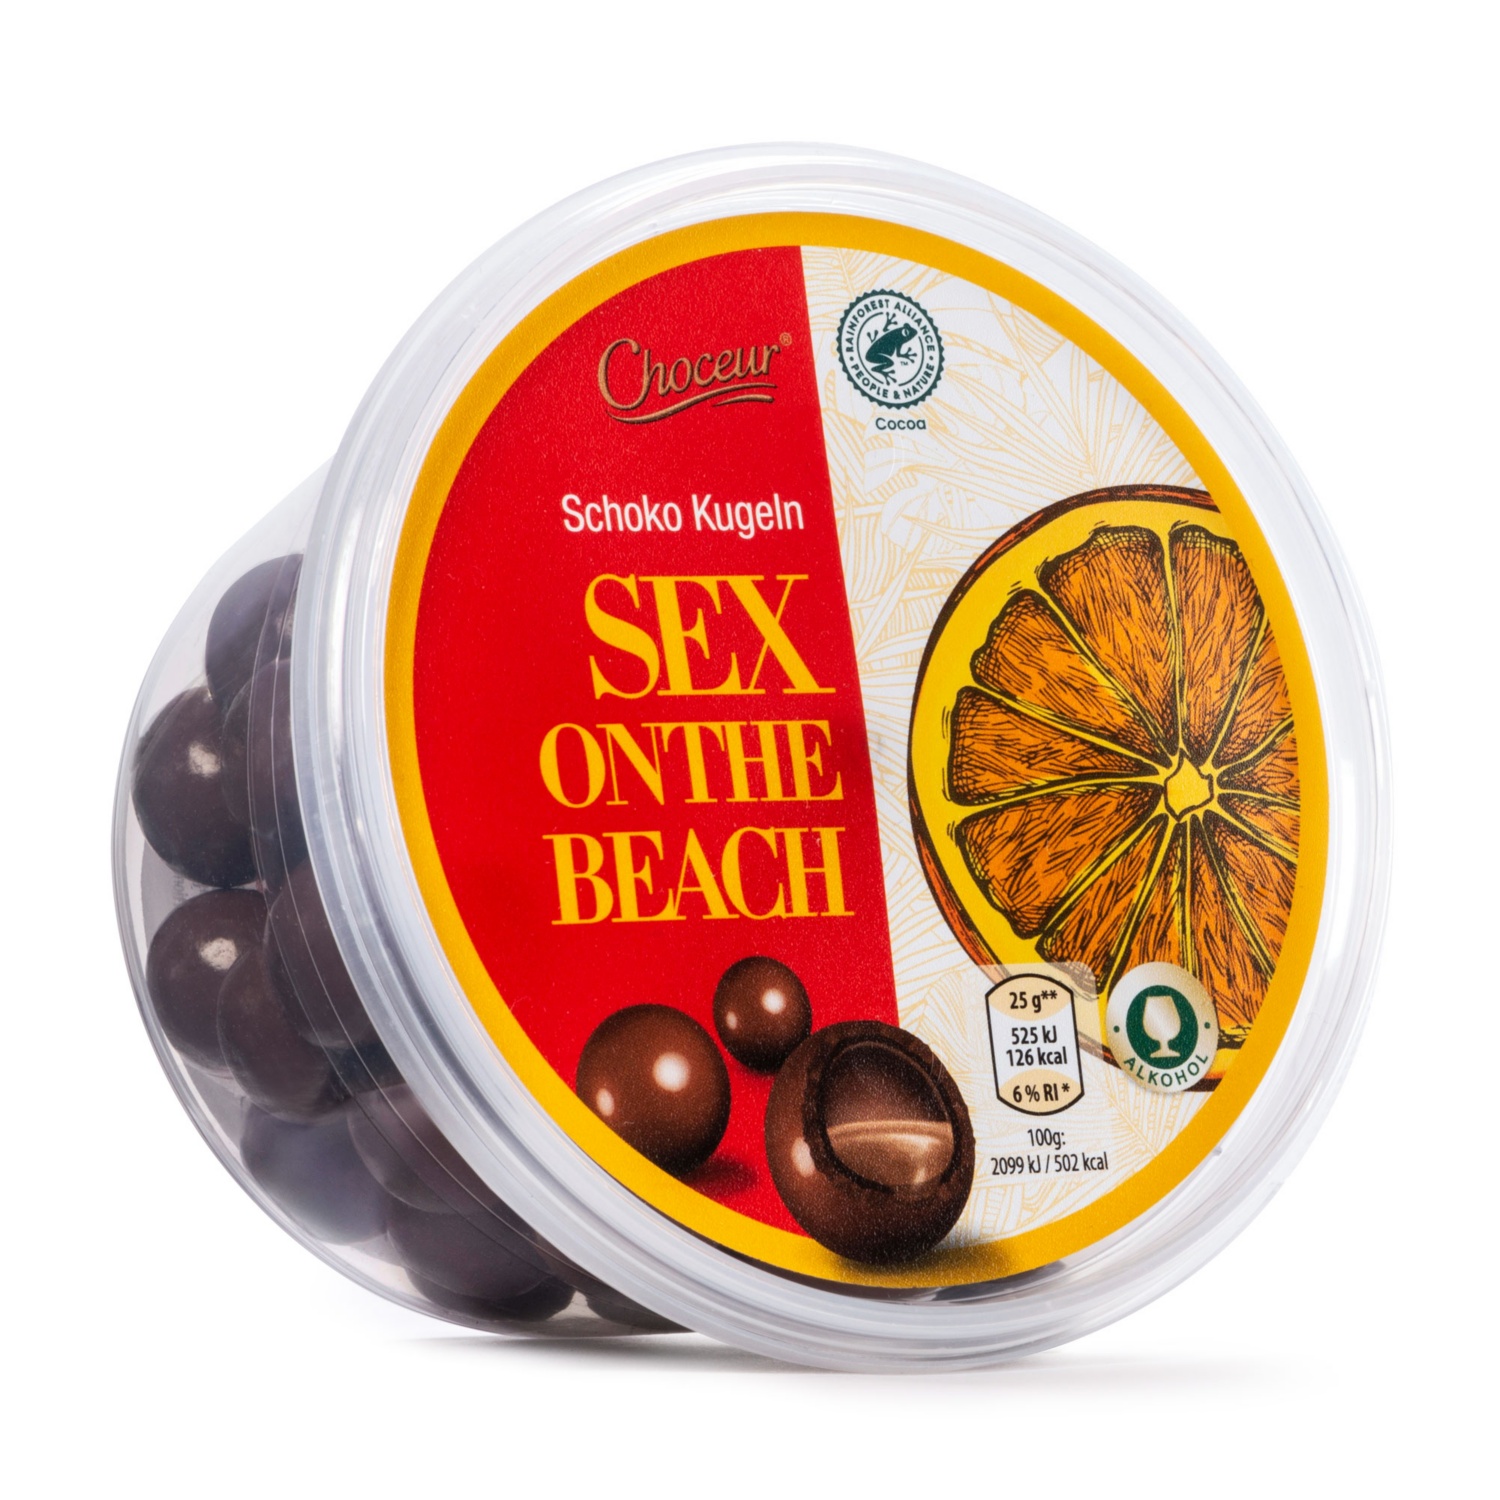 CHOCEUR Töltött csokoládédrazsé, Sex on the beach, 300 g